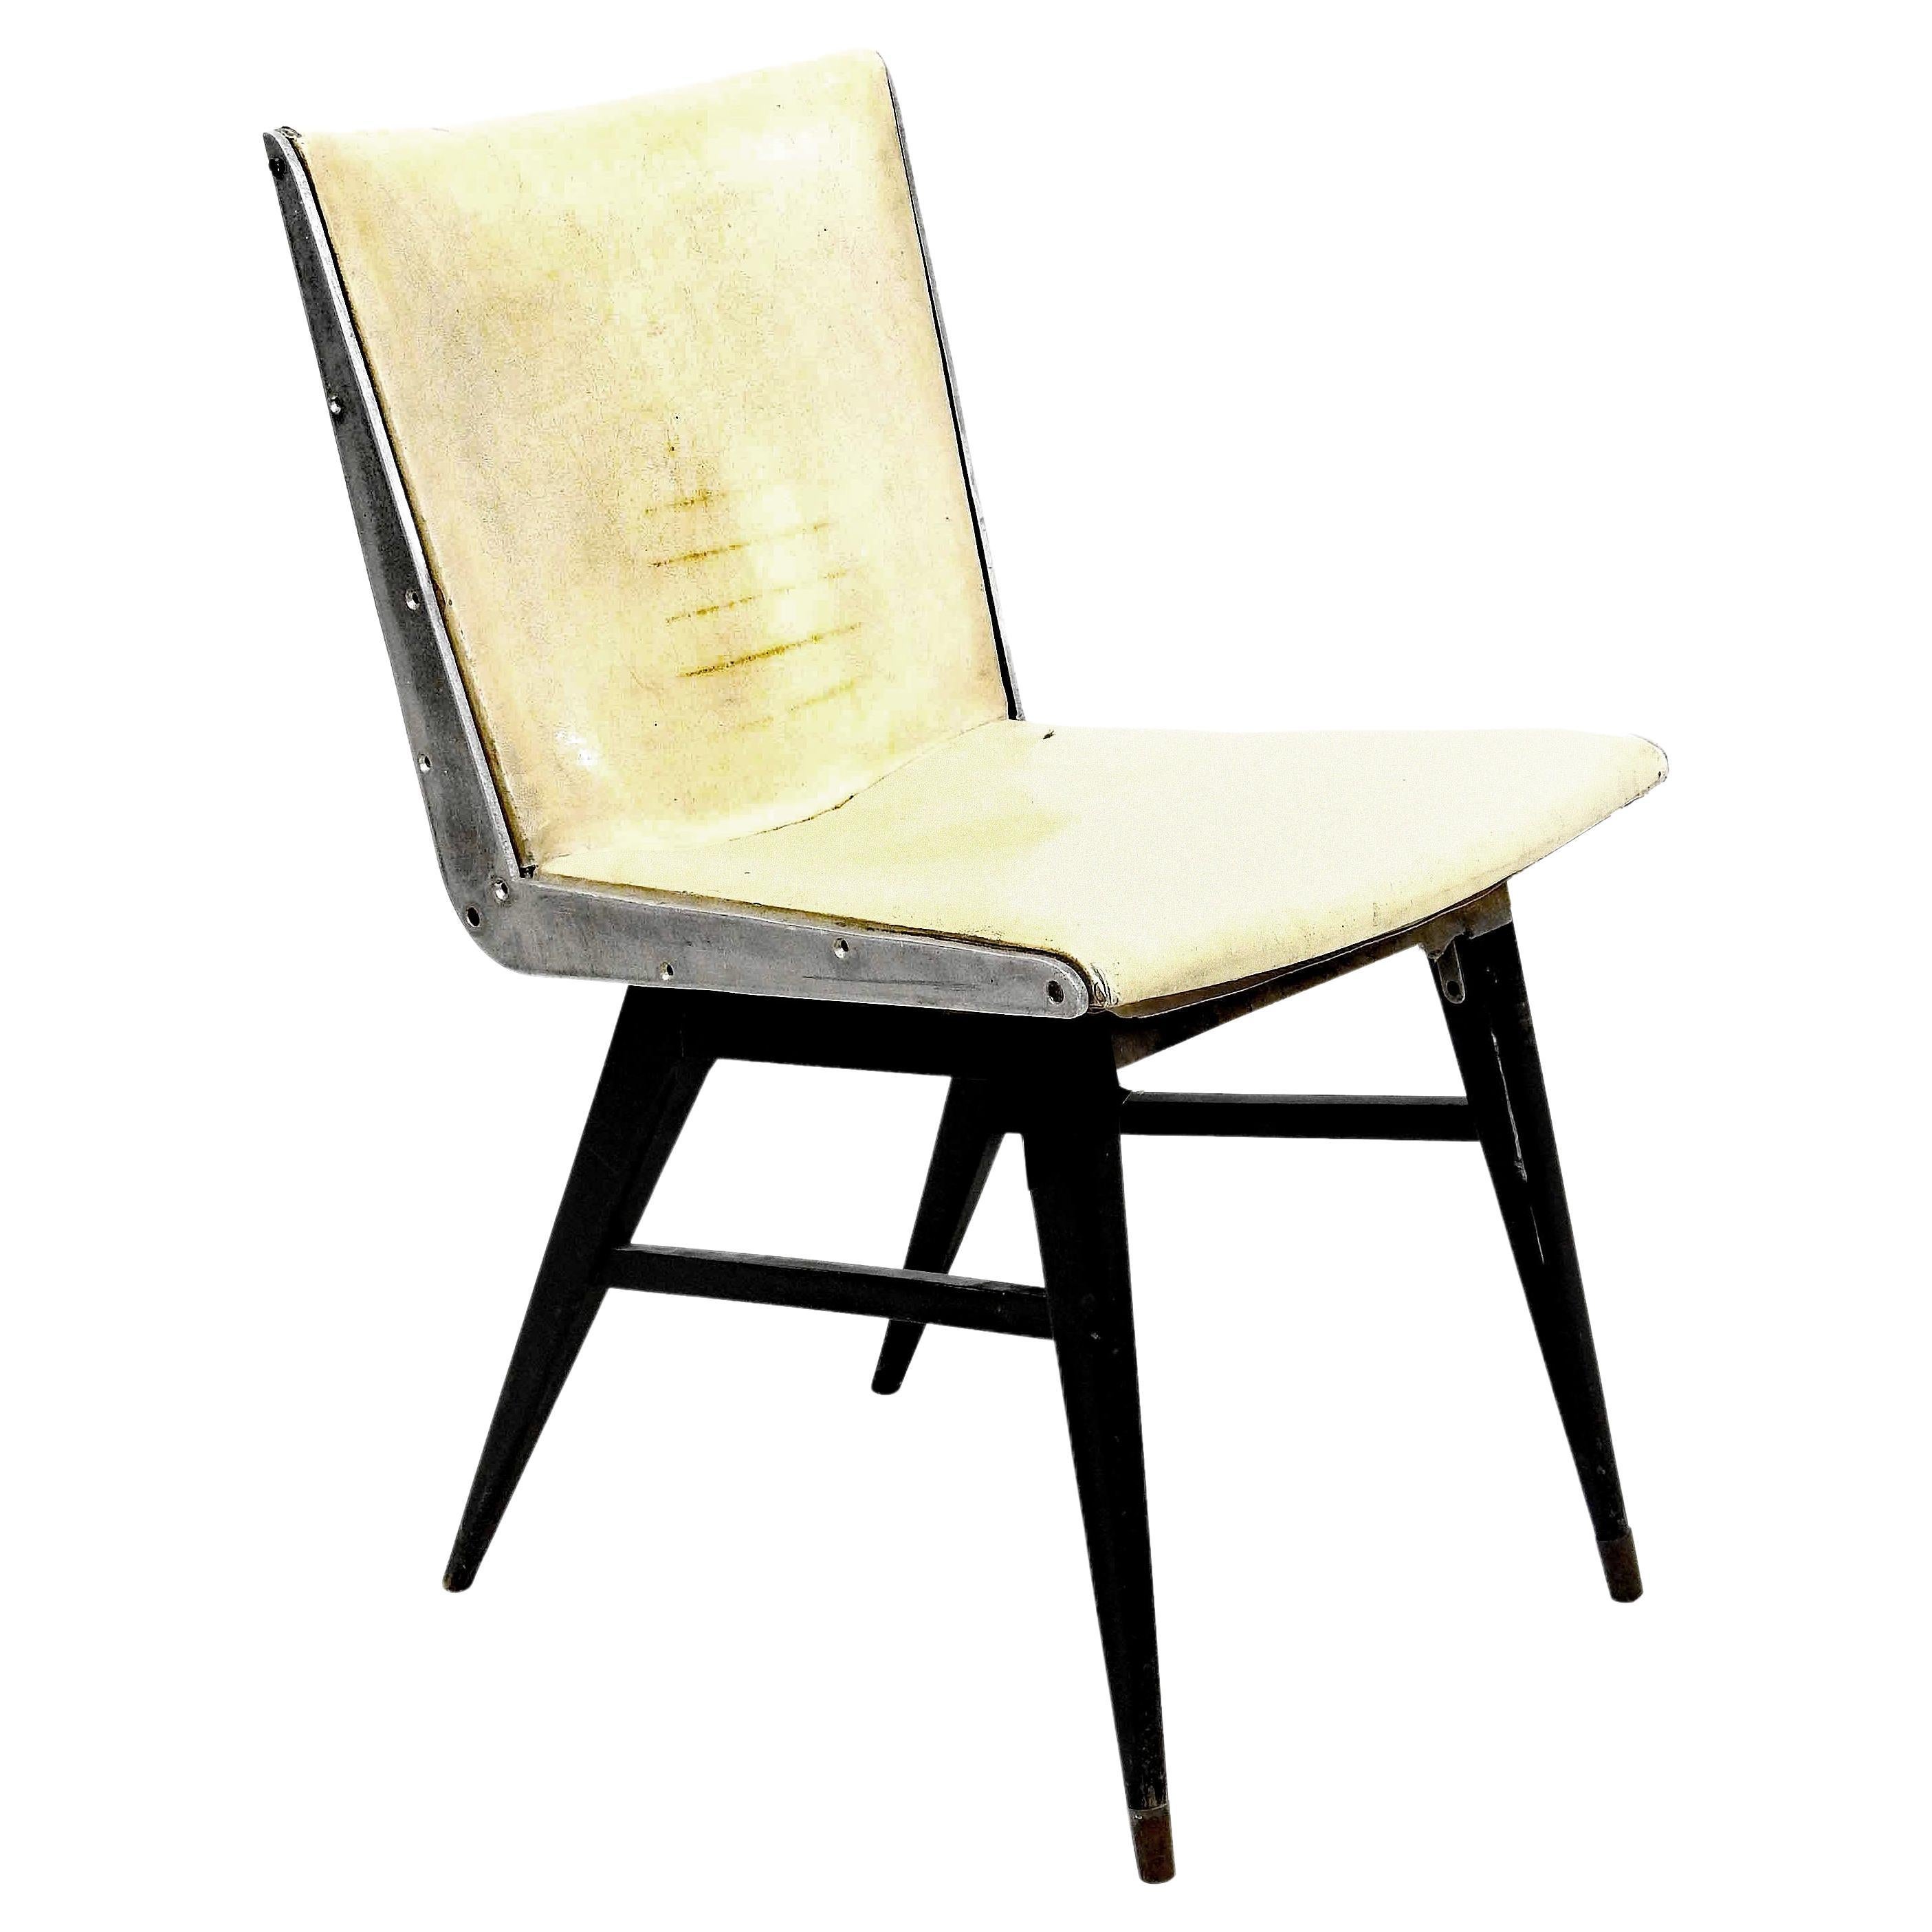 Stuhl aus geschwärztem Holz und Aluminium im Stil von Jens RISOM. 